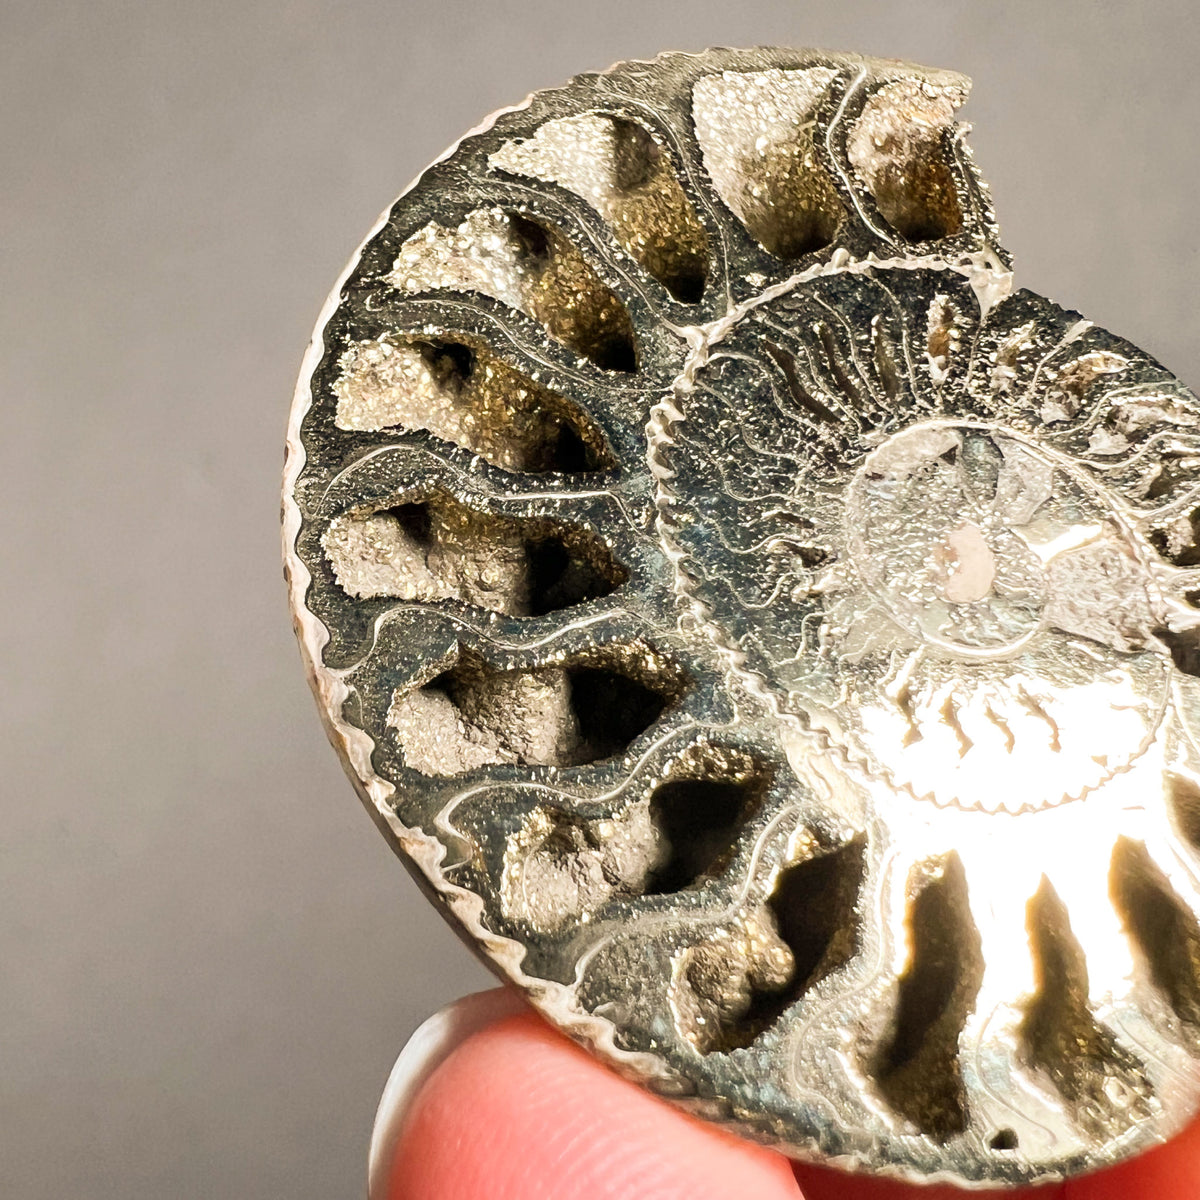 Pyritized Ammonite Chambers